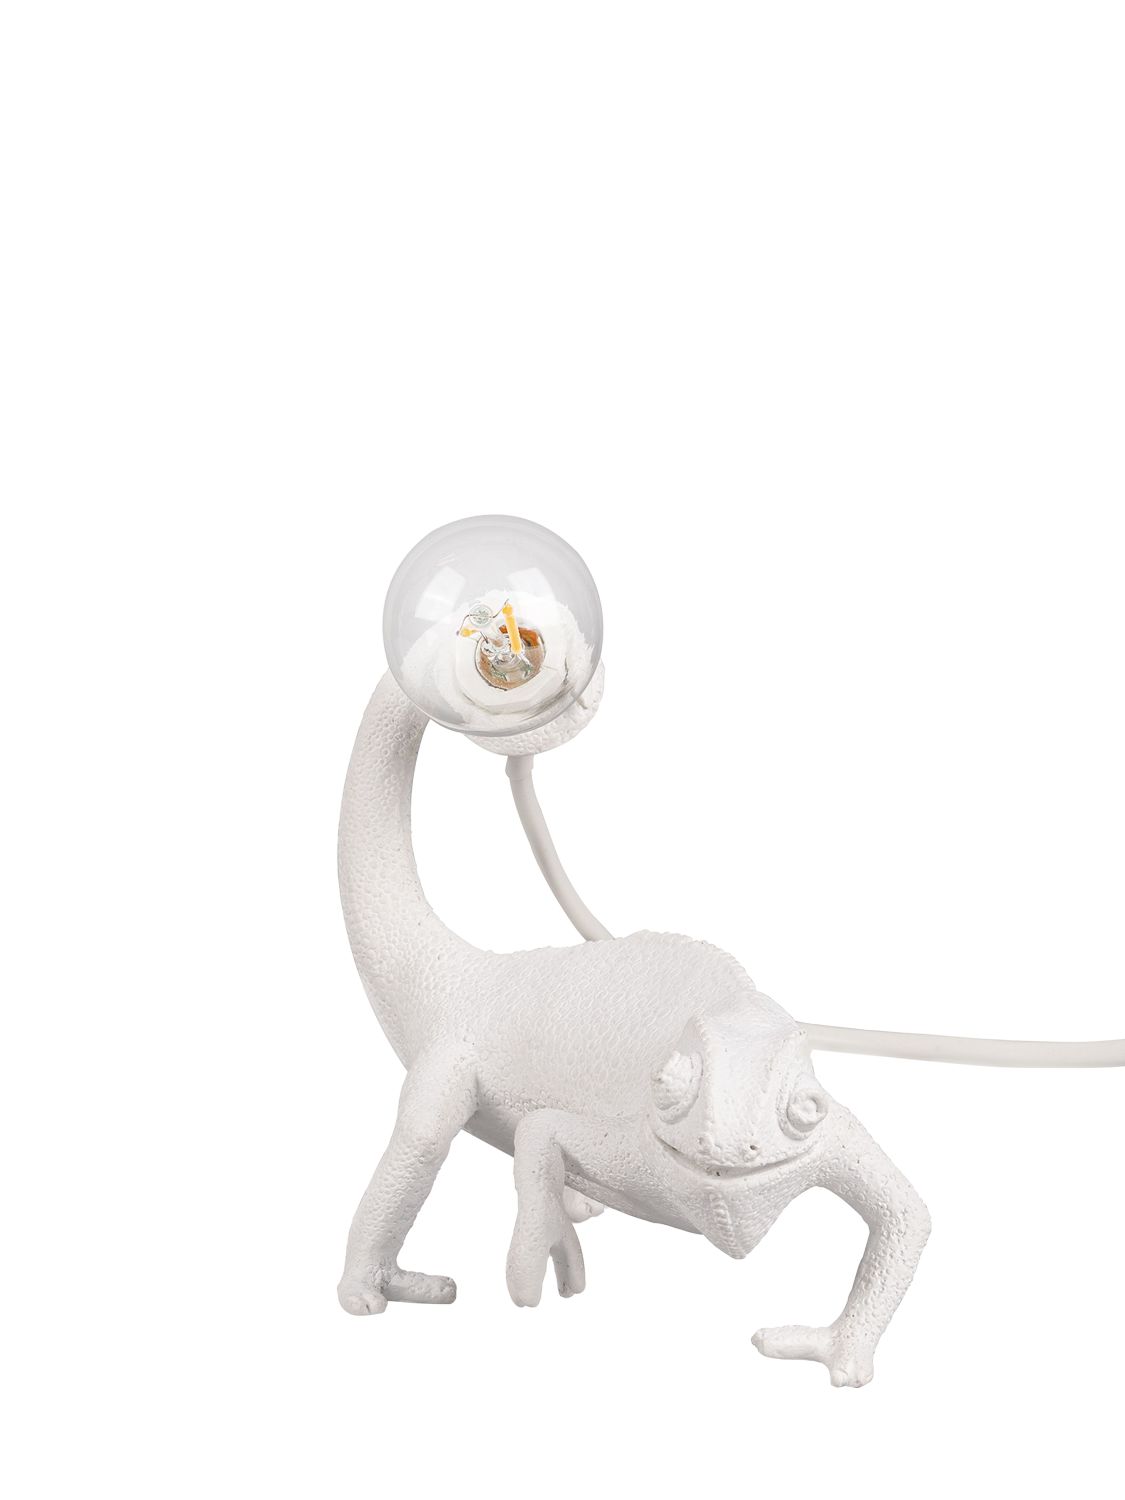 Seletti Still Chameleon Lamp In White